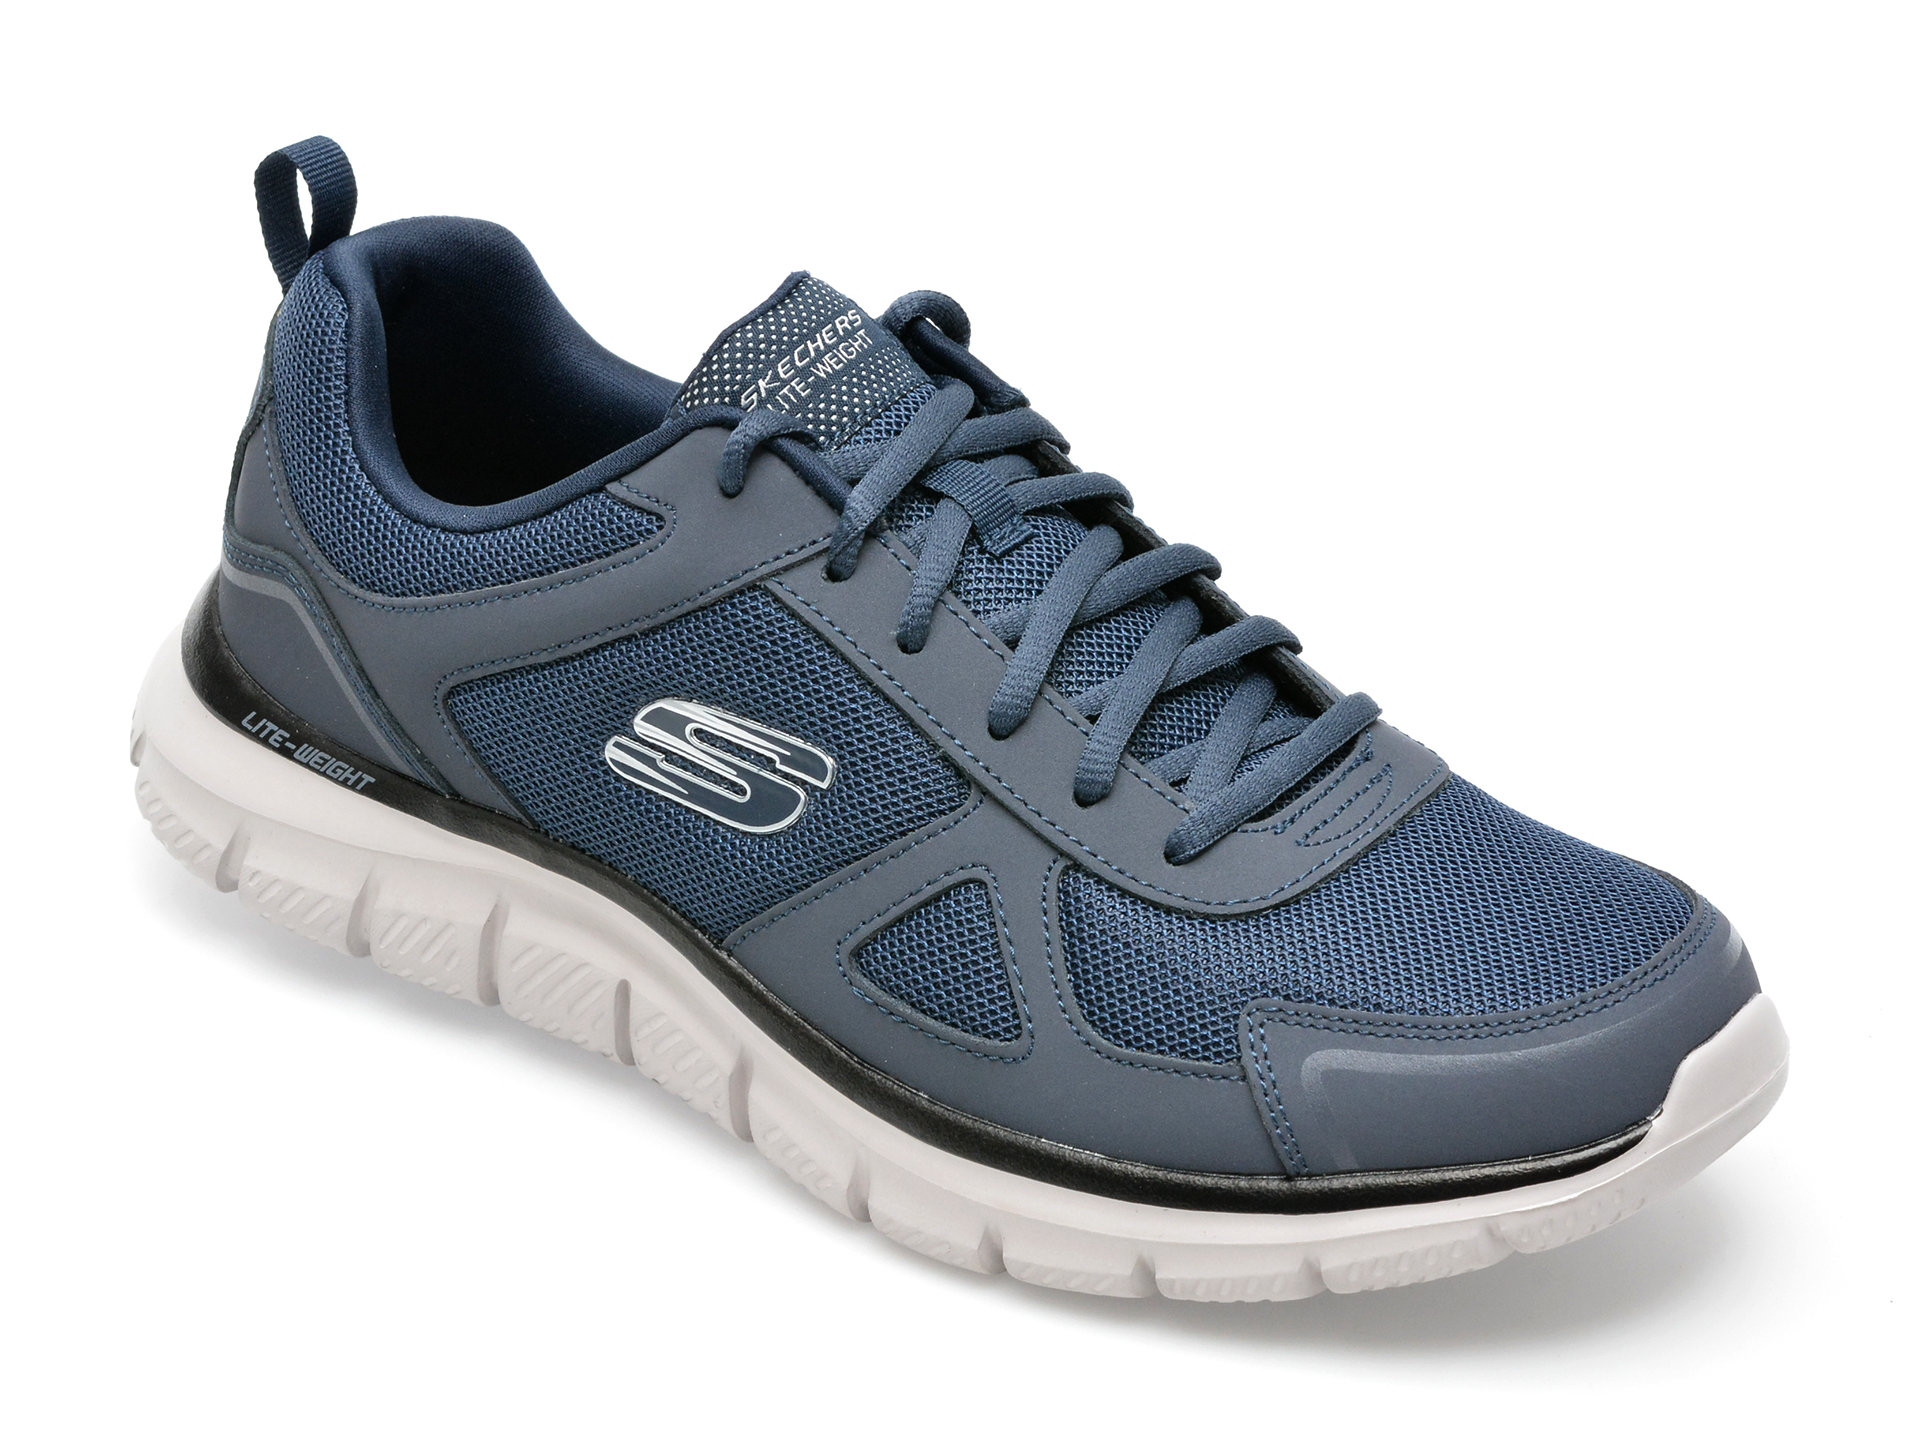 Pantofi sport SKECHERS bleumarin, TRACK, din material textil si piele naturala /barbati/pantofi